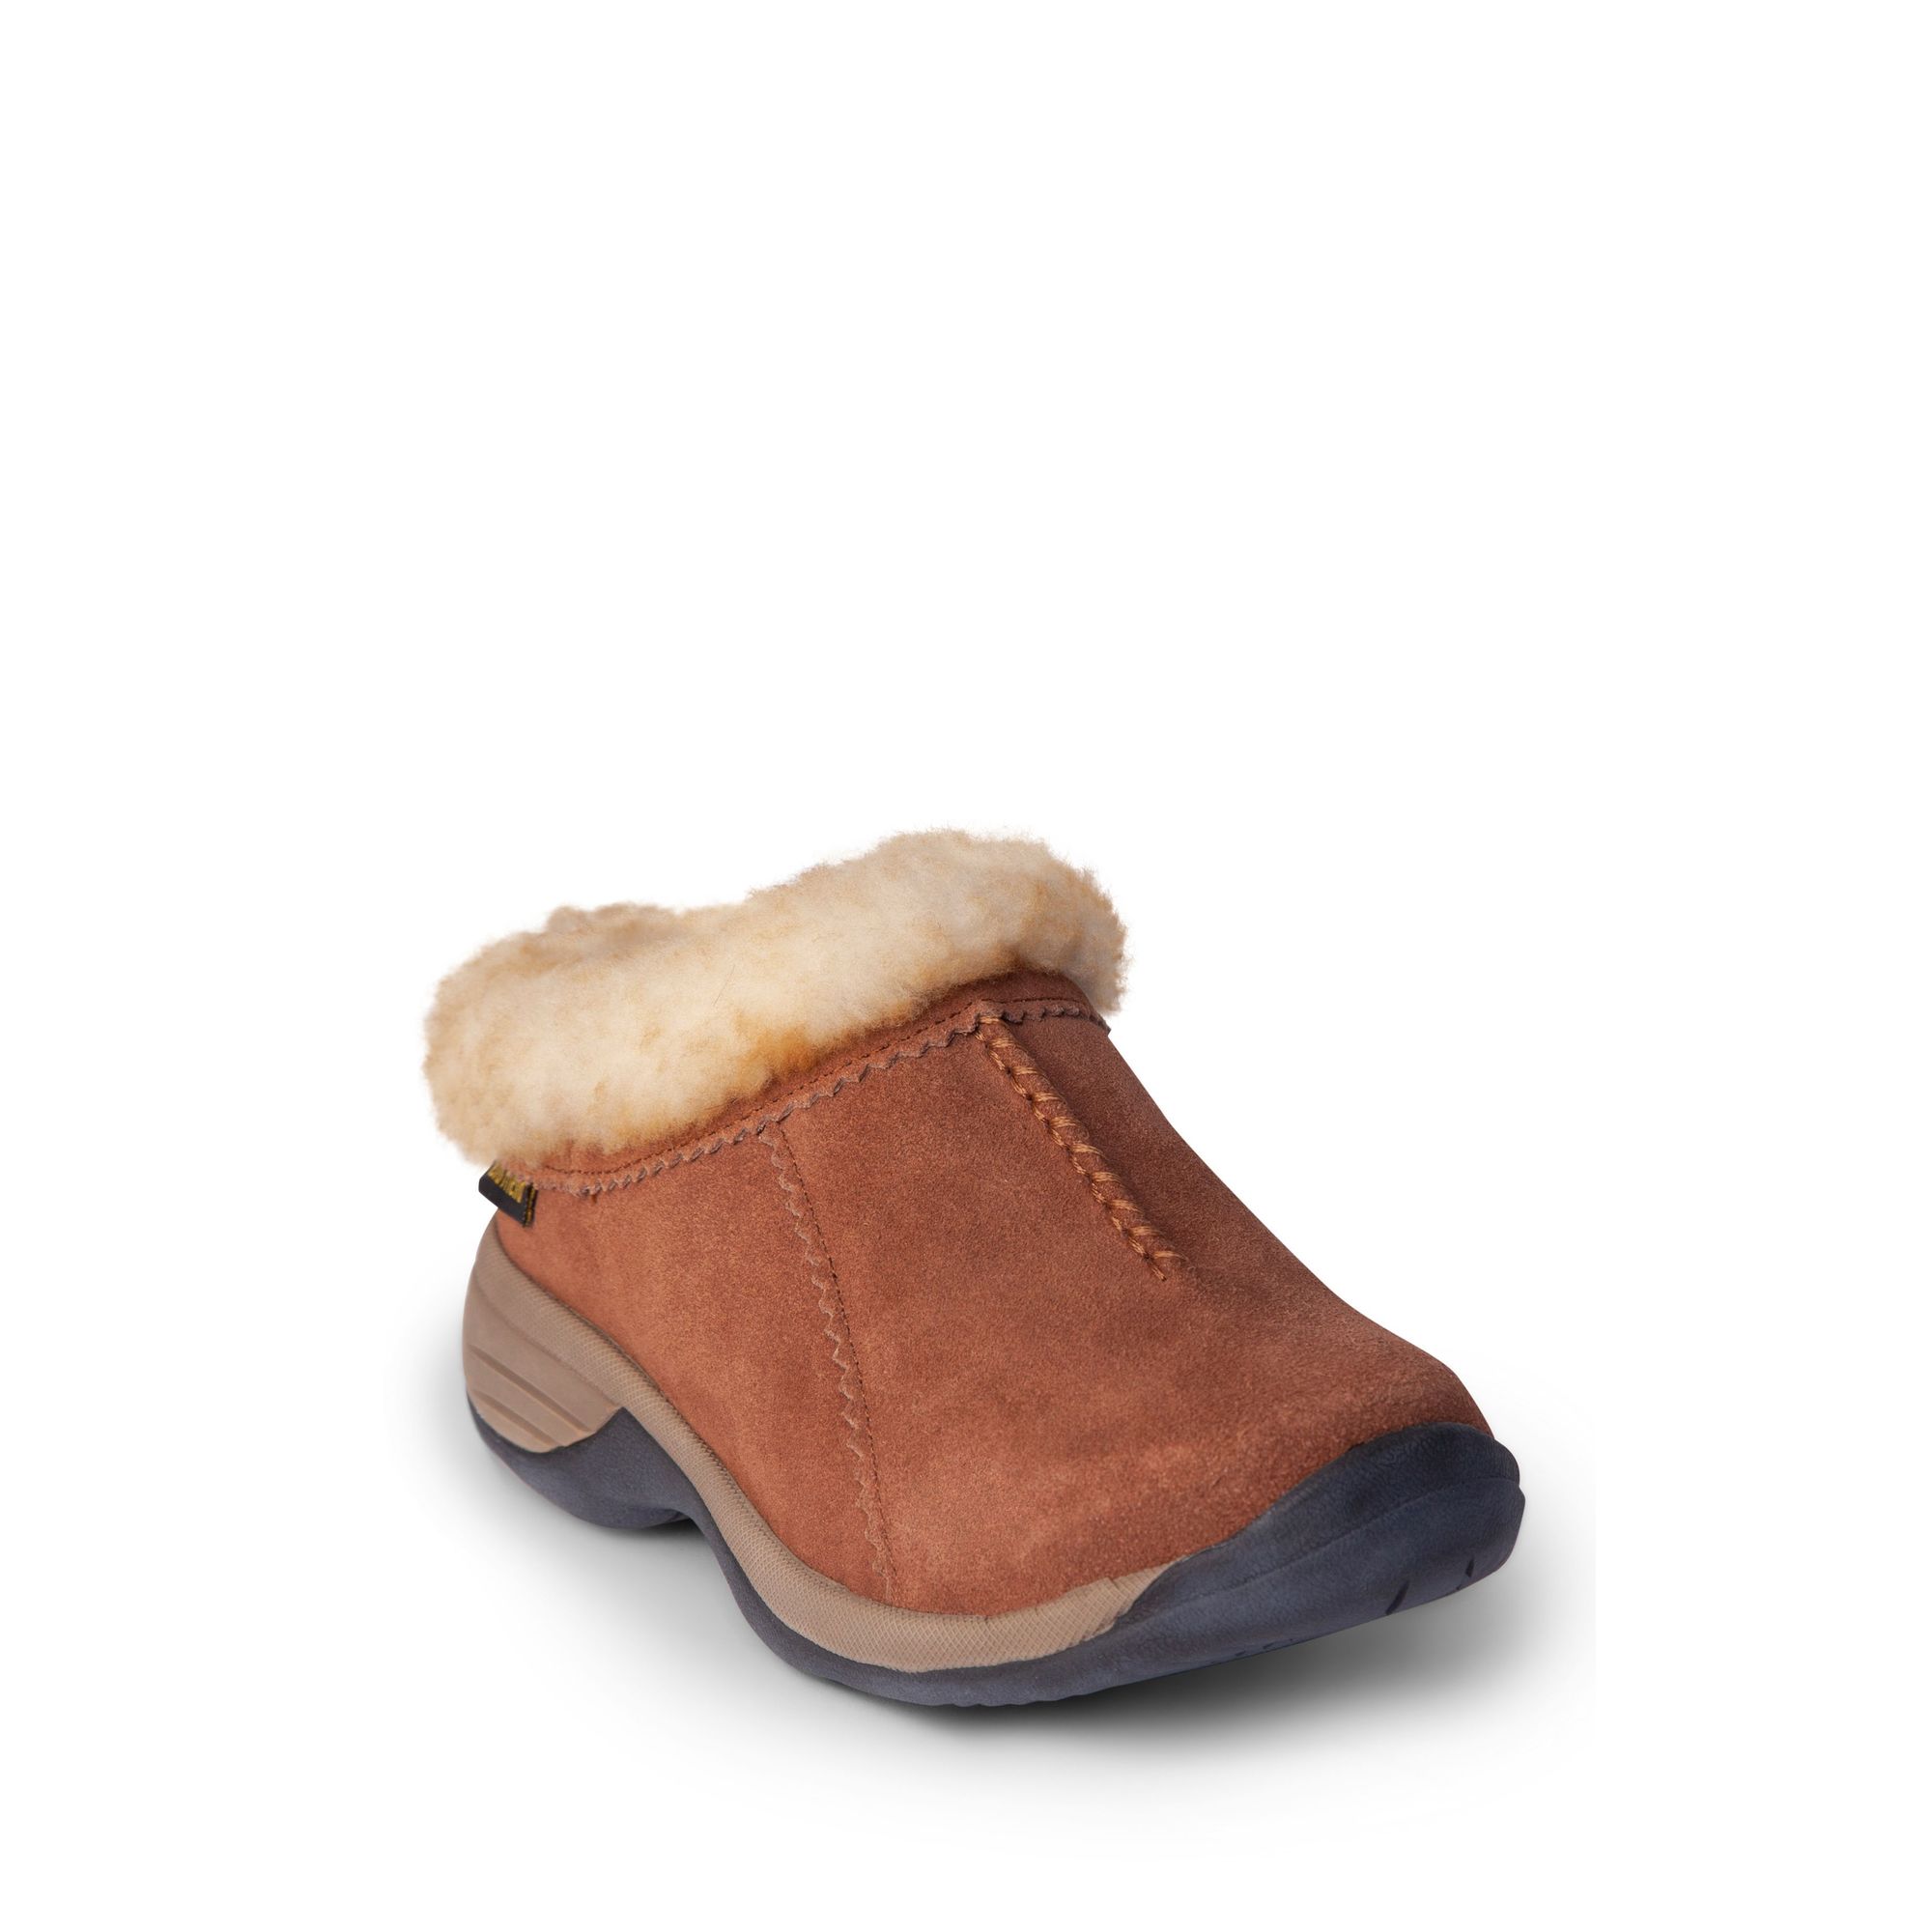 Old Friend Footwear, Women's Sheepskin All Purpose Shoe, Size 8, Width Medium, Color Chestnut, Model 441192